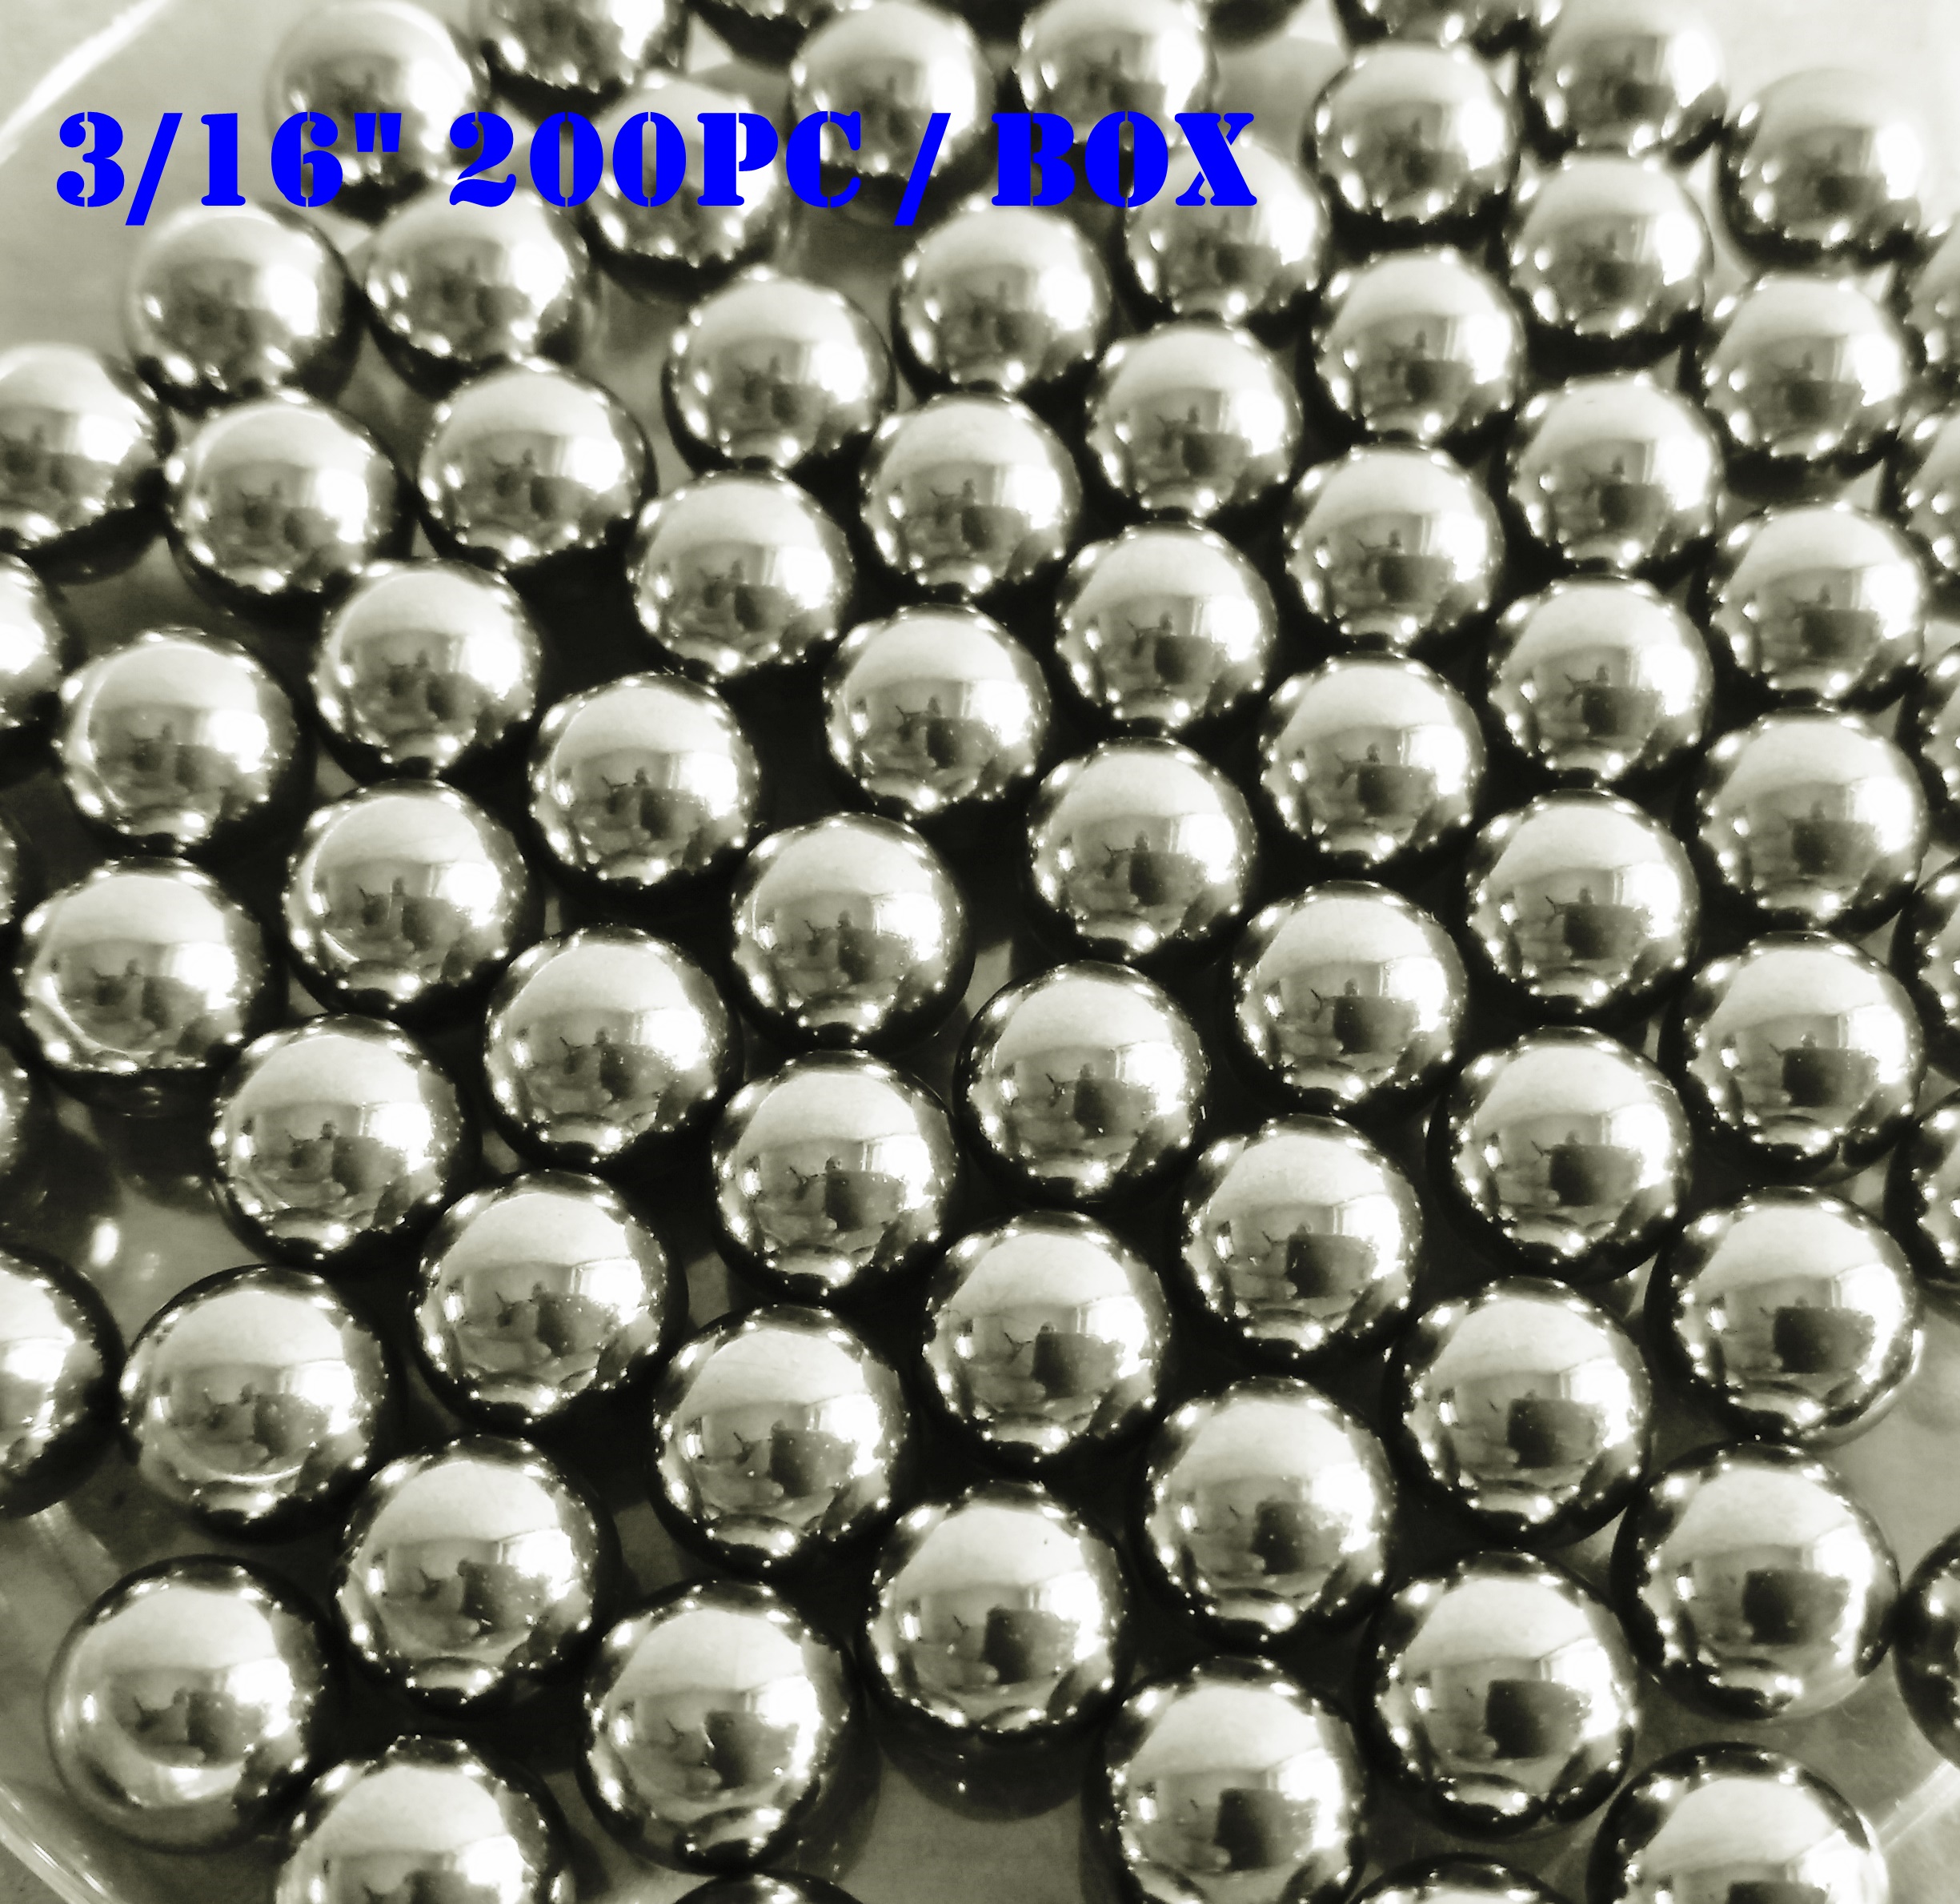 Tangeseiki Bearing Balls 3/16 (Grade 100 )